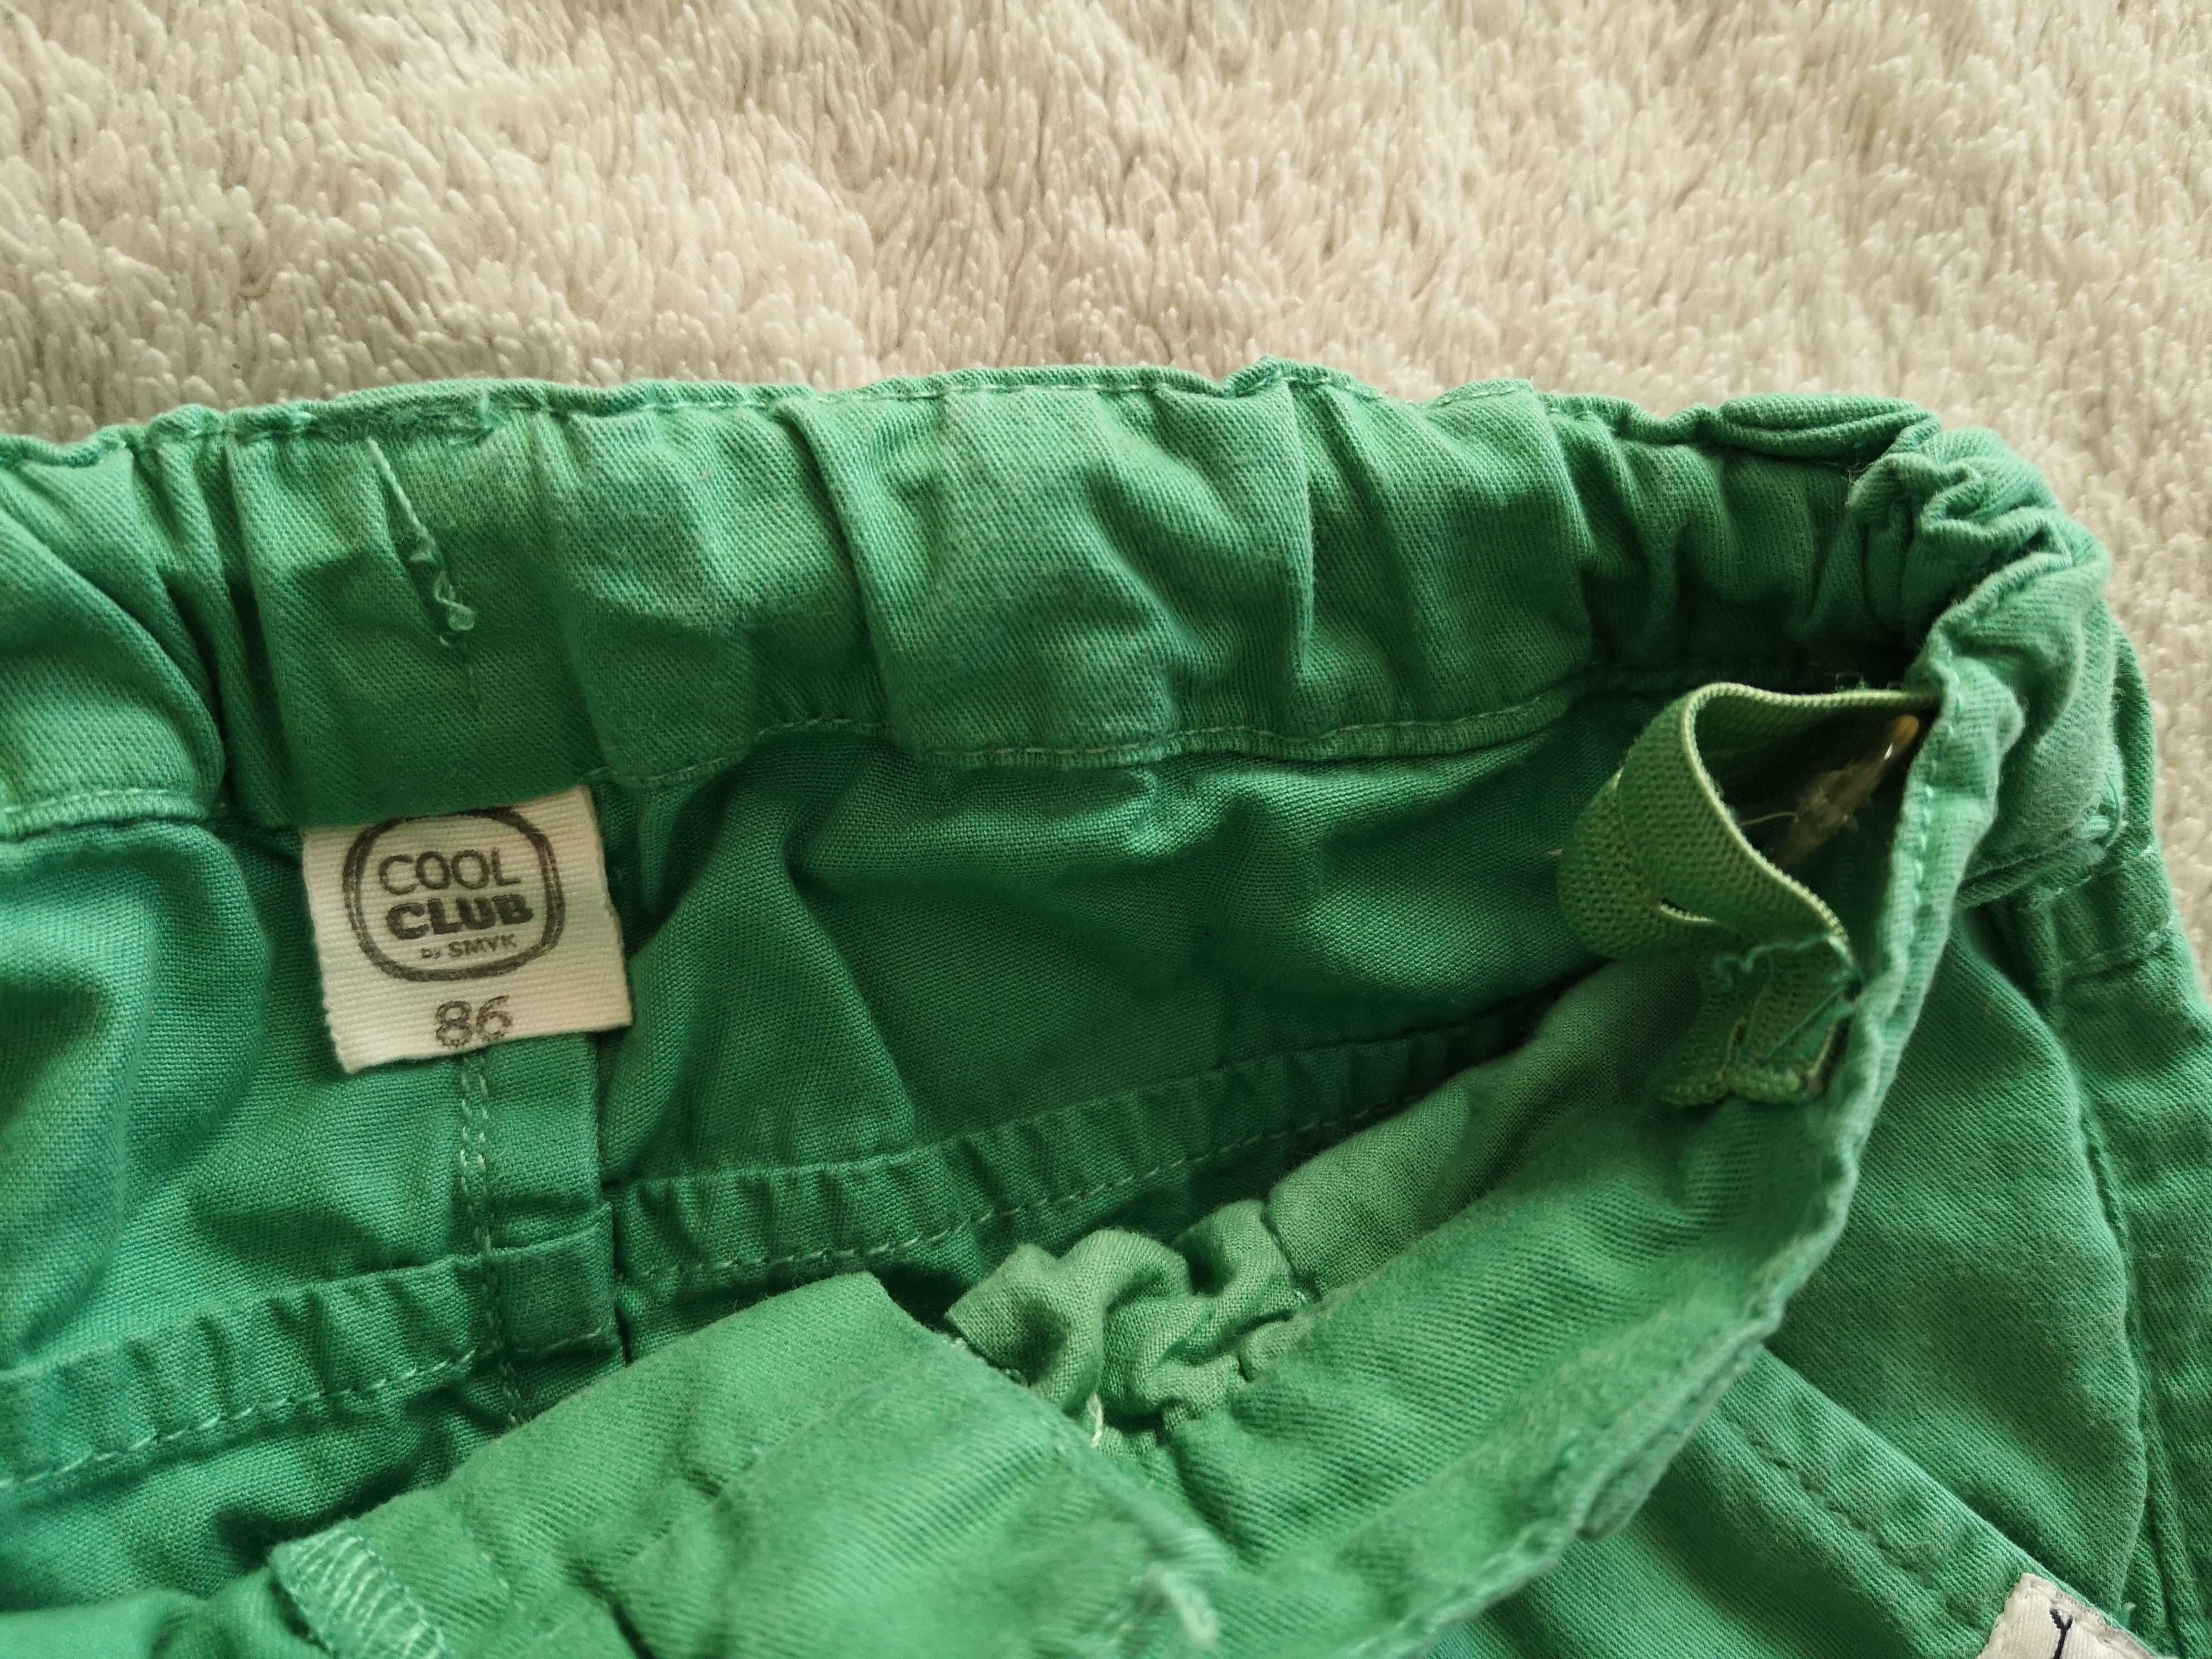 Zielone eleganckie regulowane spodnie Cool Club 86 jak nowe